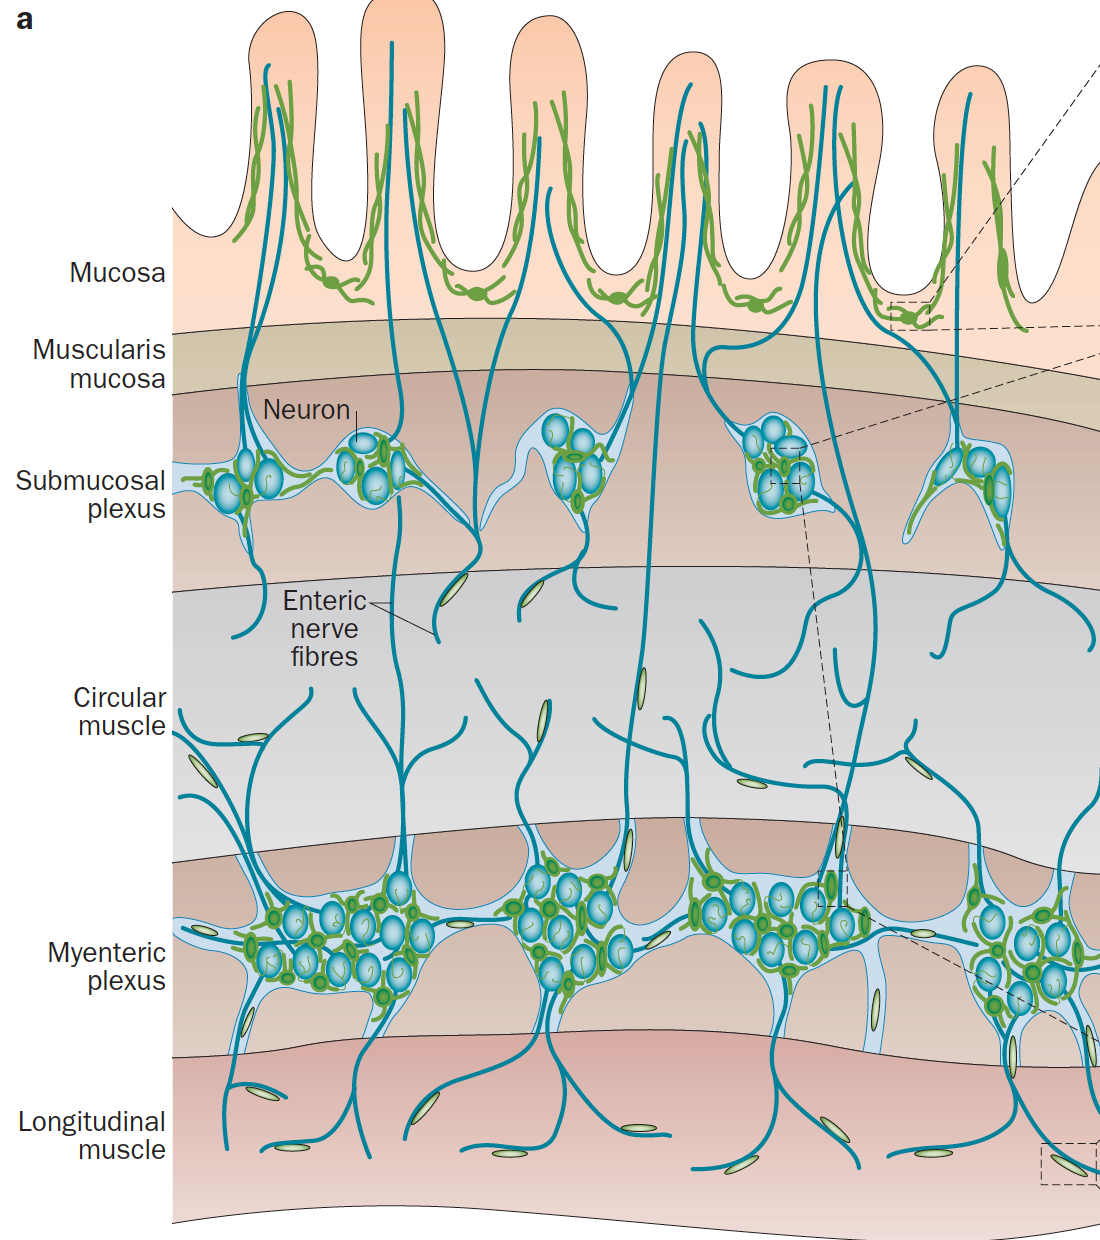 ESS nöron ve glia hücrelerinden oluşur.